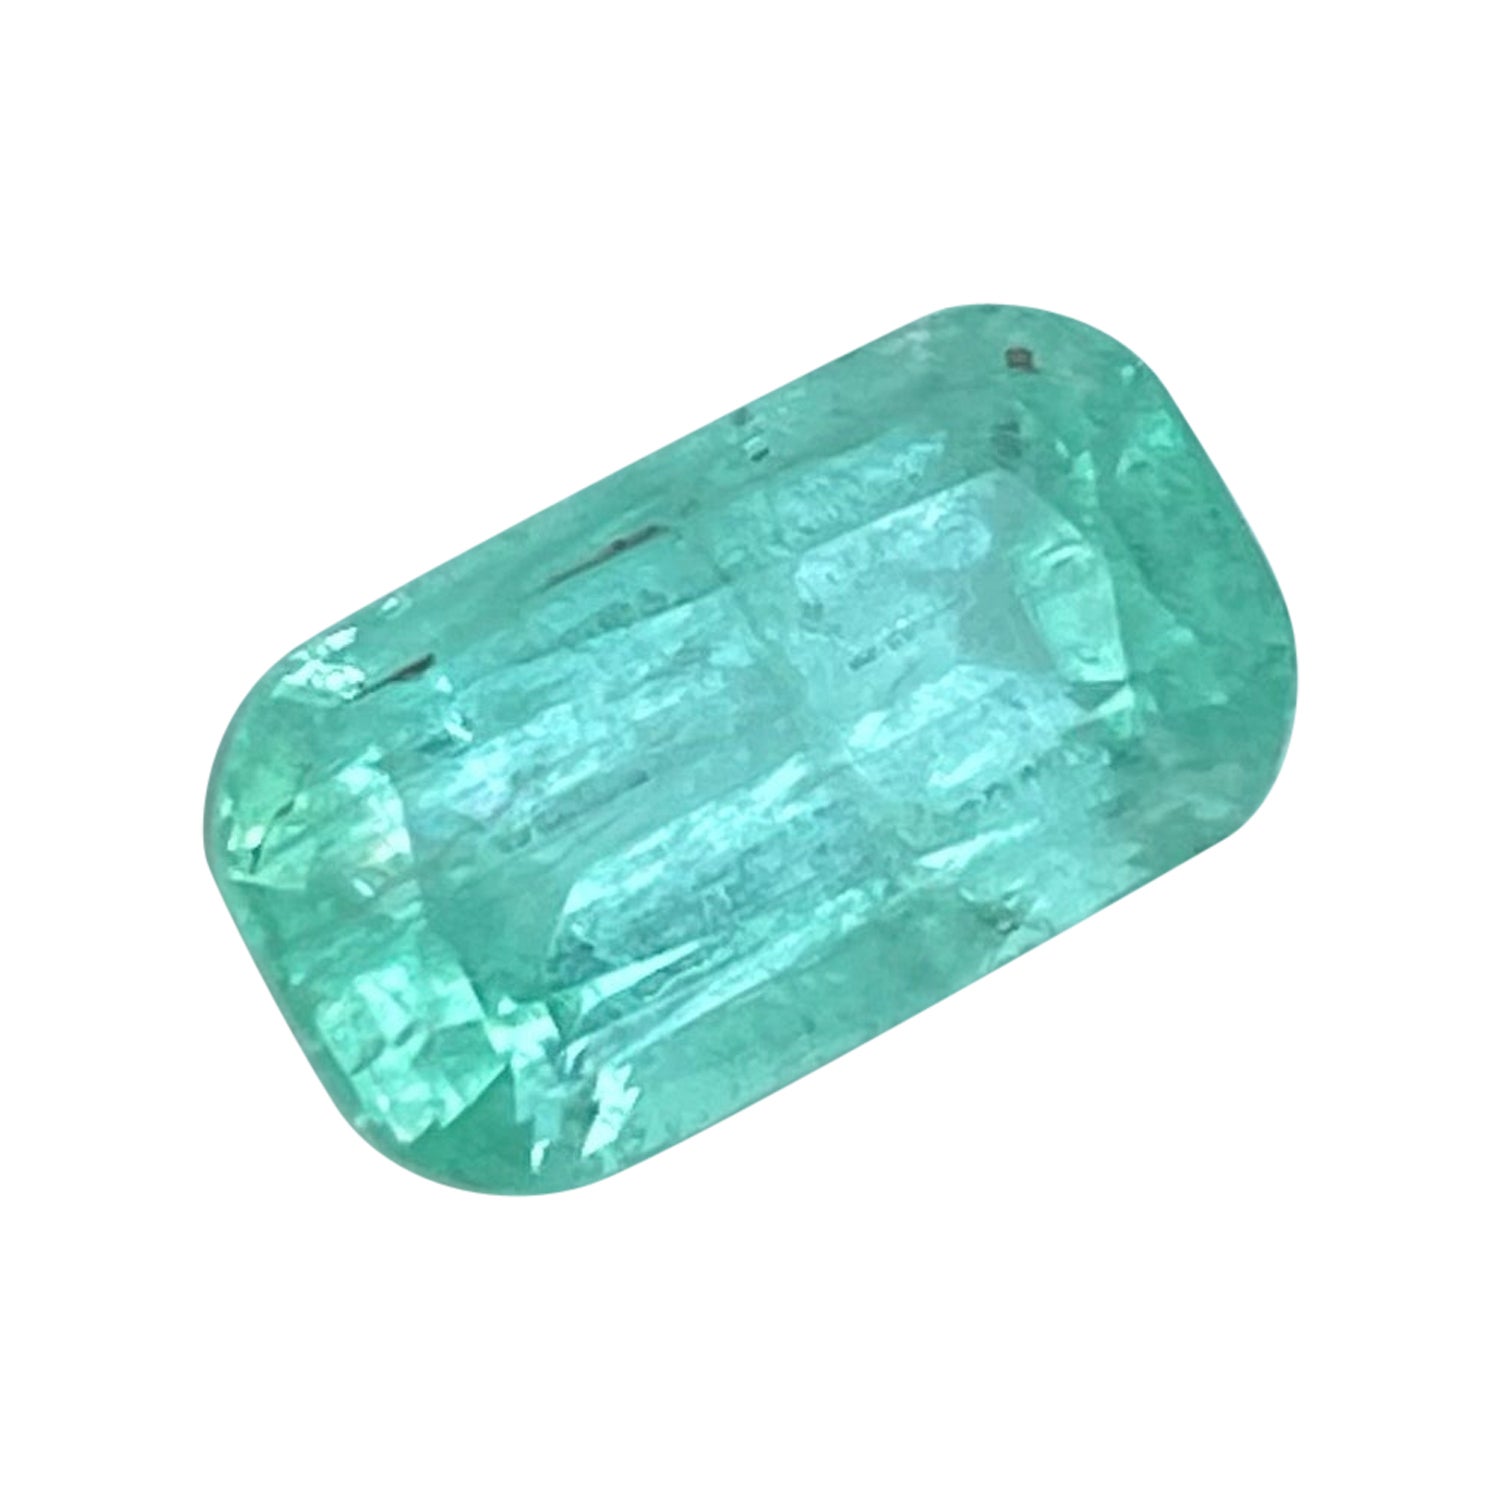 Exquisite Punjshir Emerald Gemstone 2.35 Carats Emerald Gem Afghan Emerald For Sale